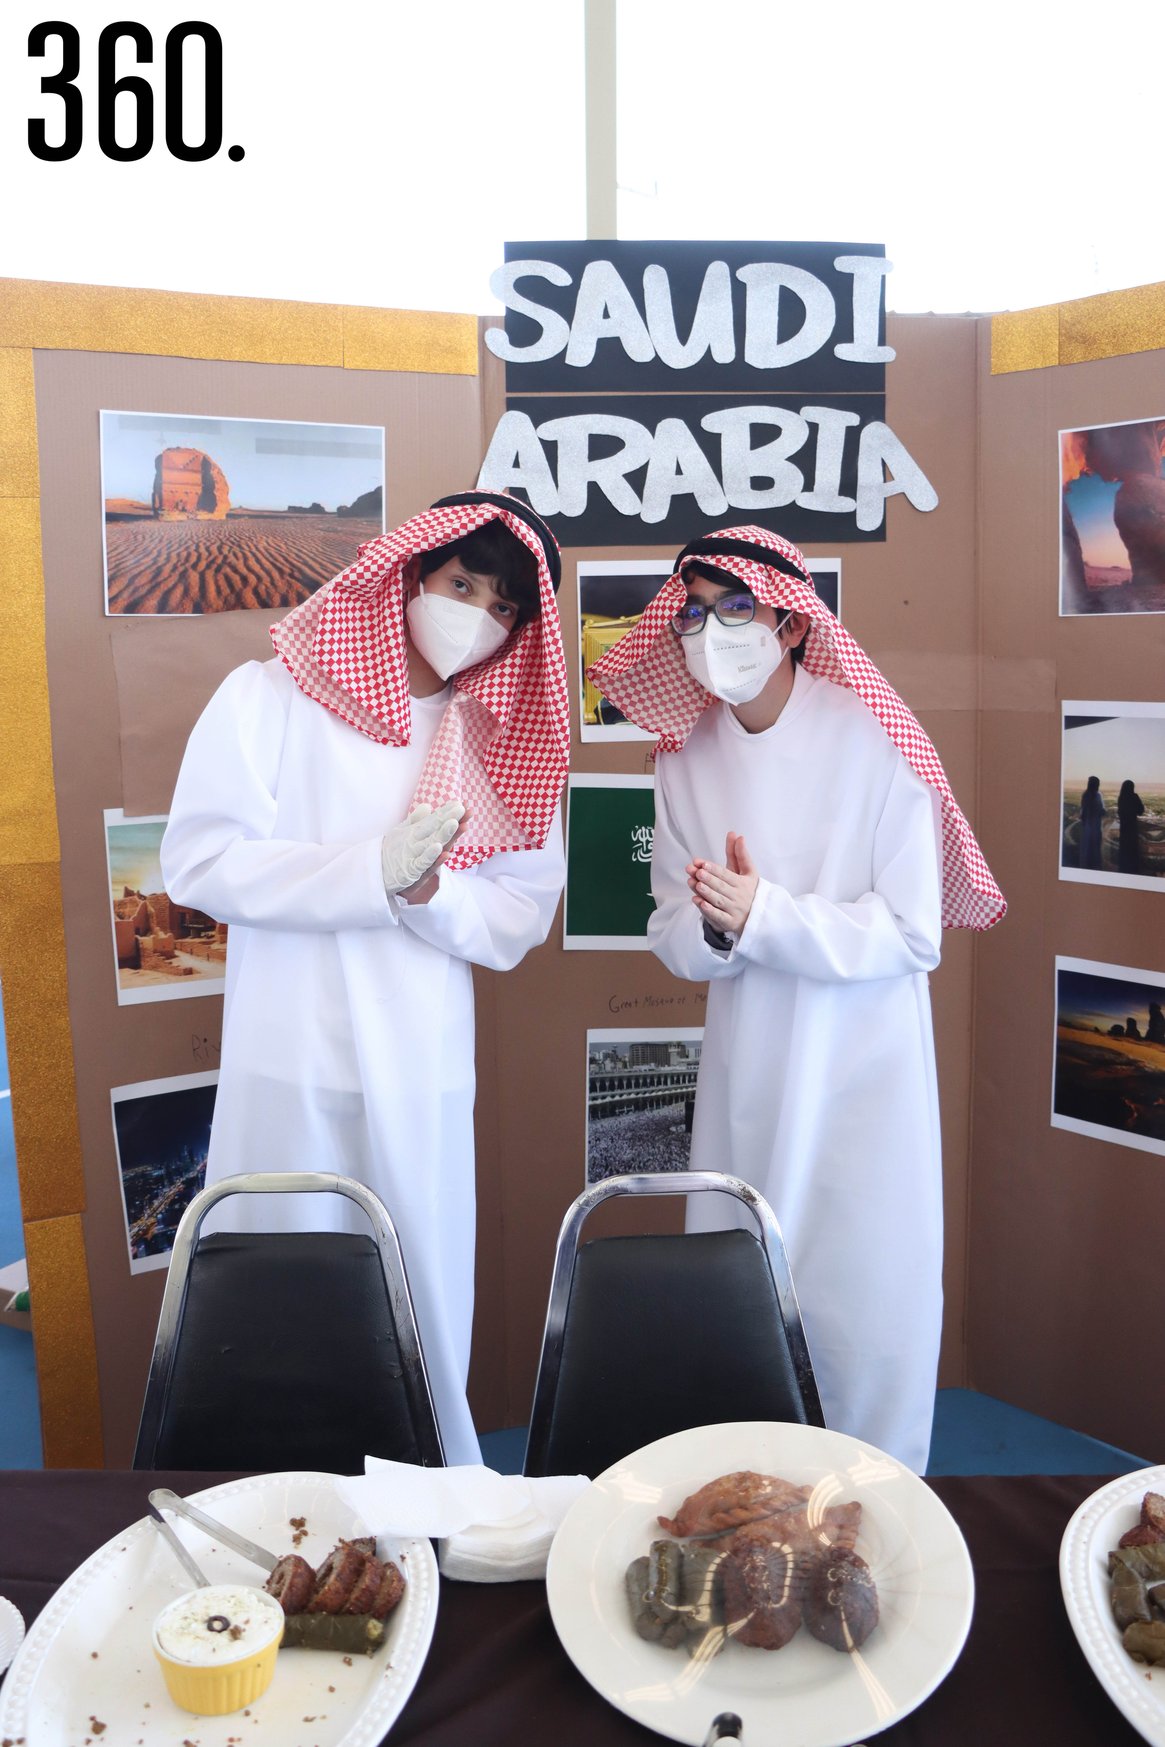 Diego Rivera y Emiliano Martínez representando Arabia Saudita.